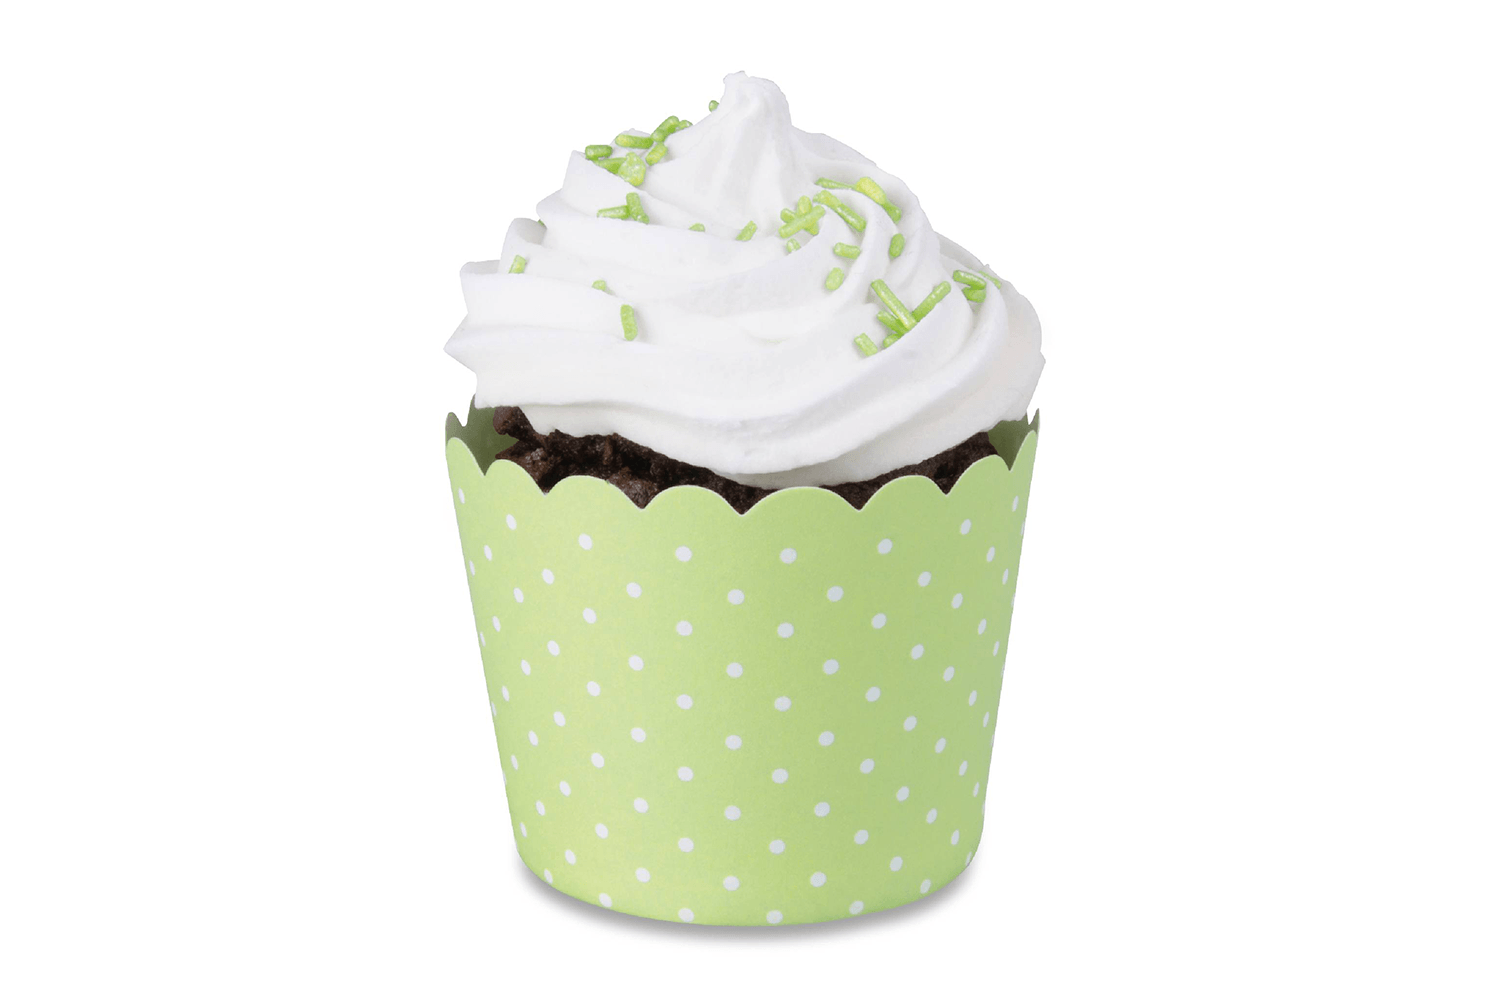 Grün-weiß-gepunktetes Muffinförmchen mit Muffin darin